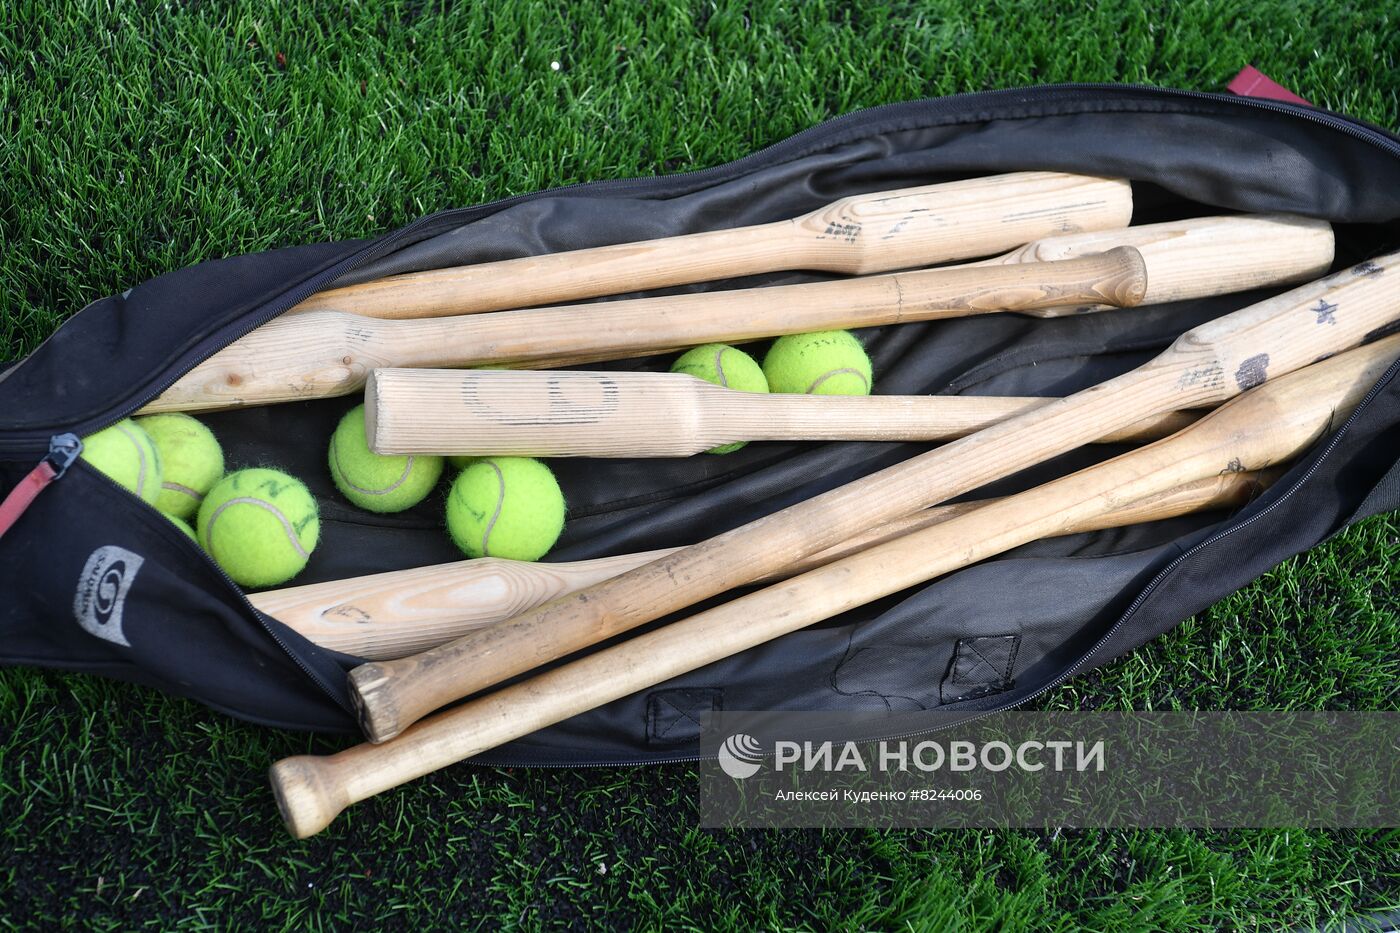 XIII Всероссийские летние сельские спортивные игры